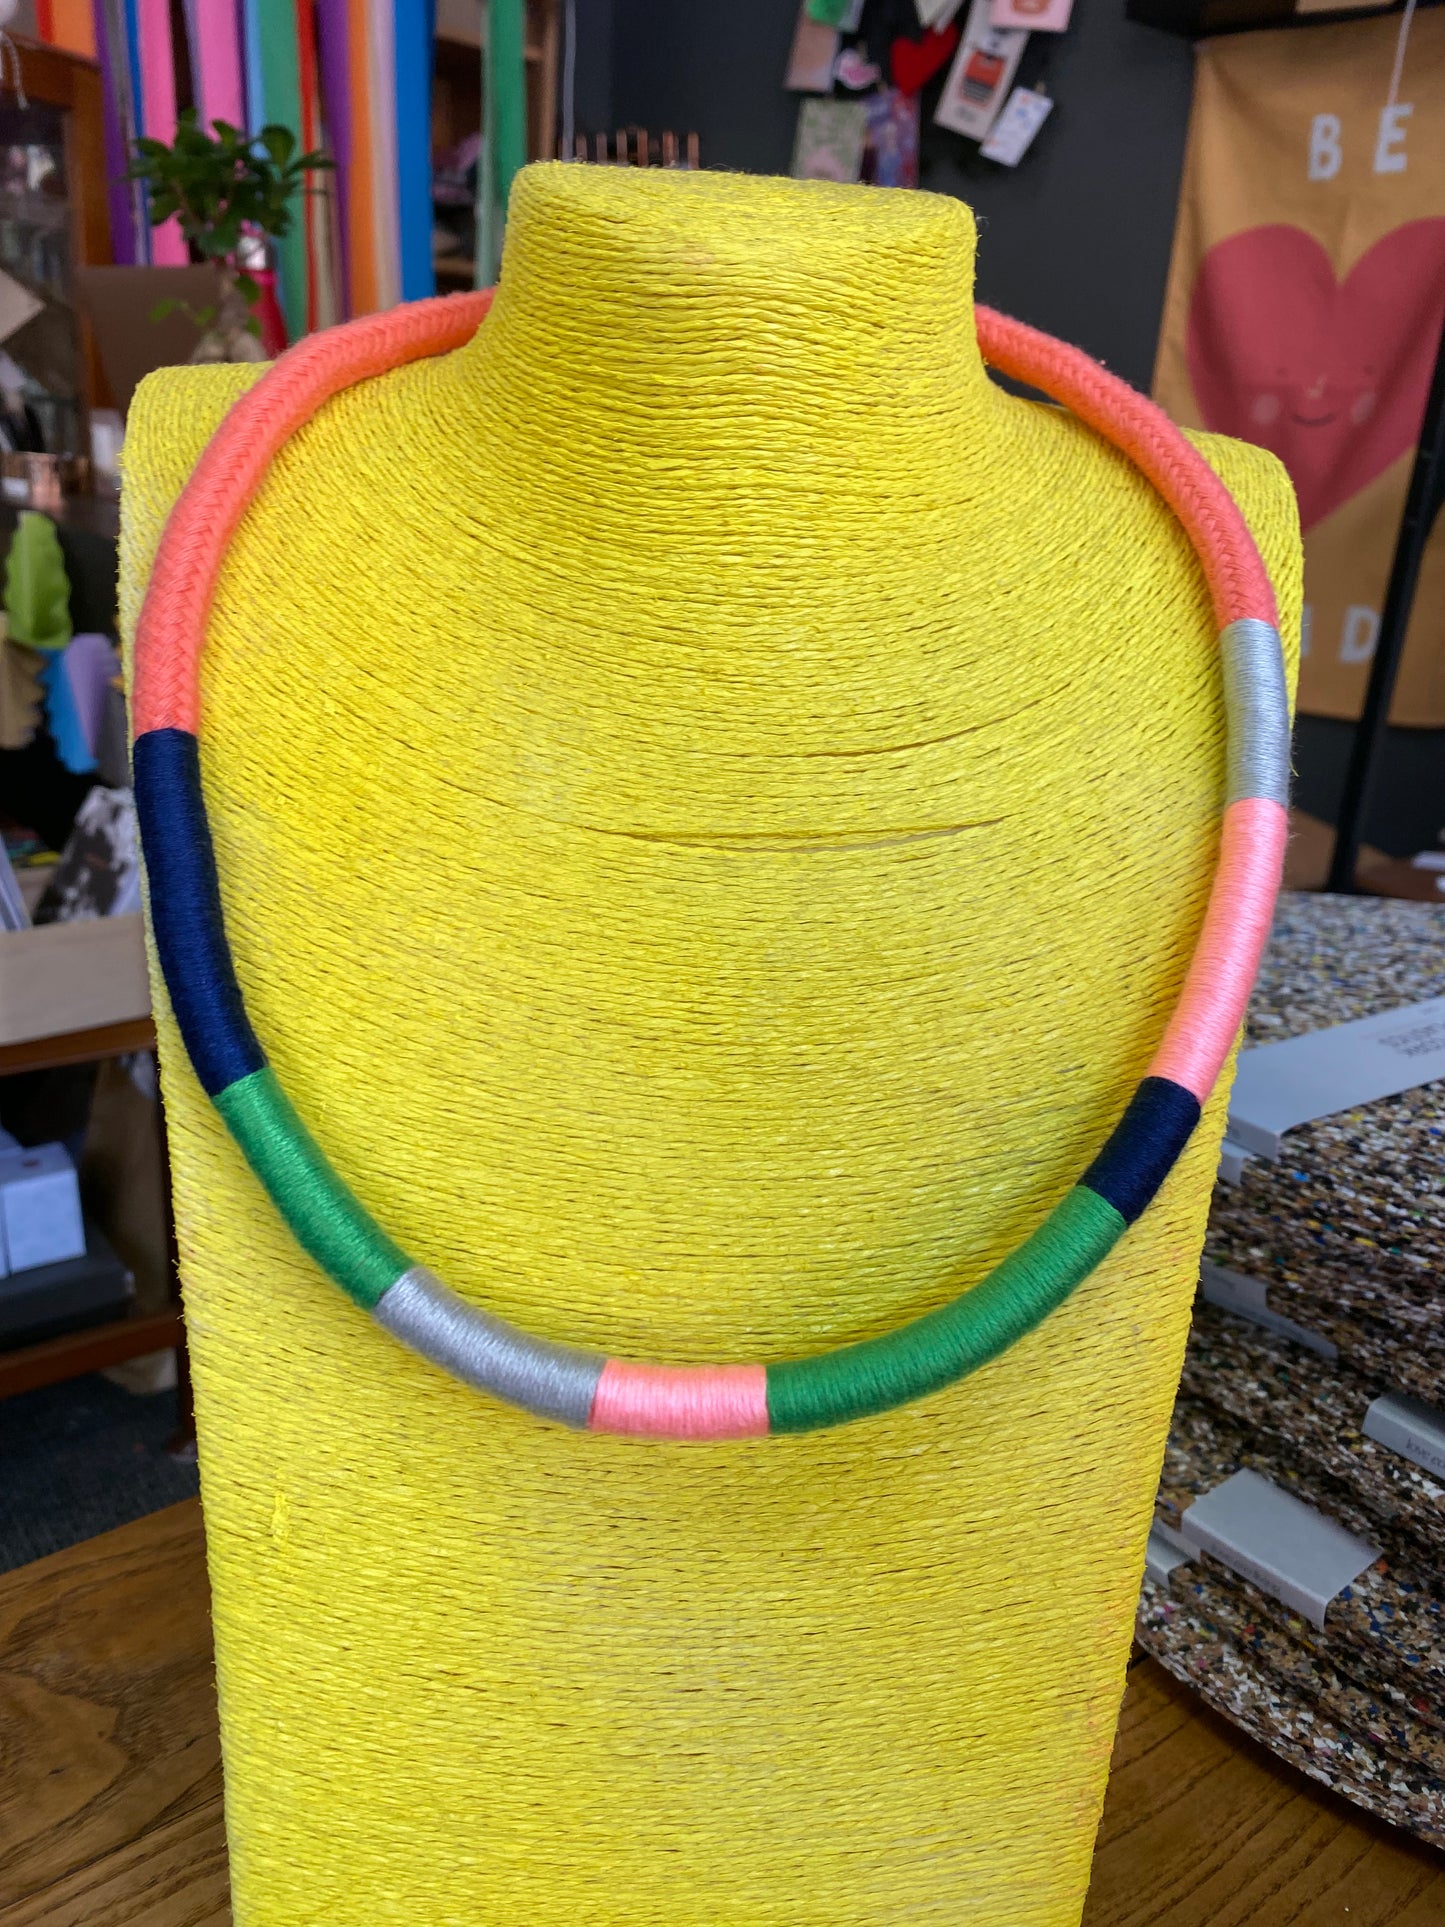 Thread Wrap Necklaces